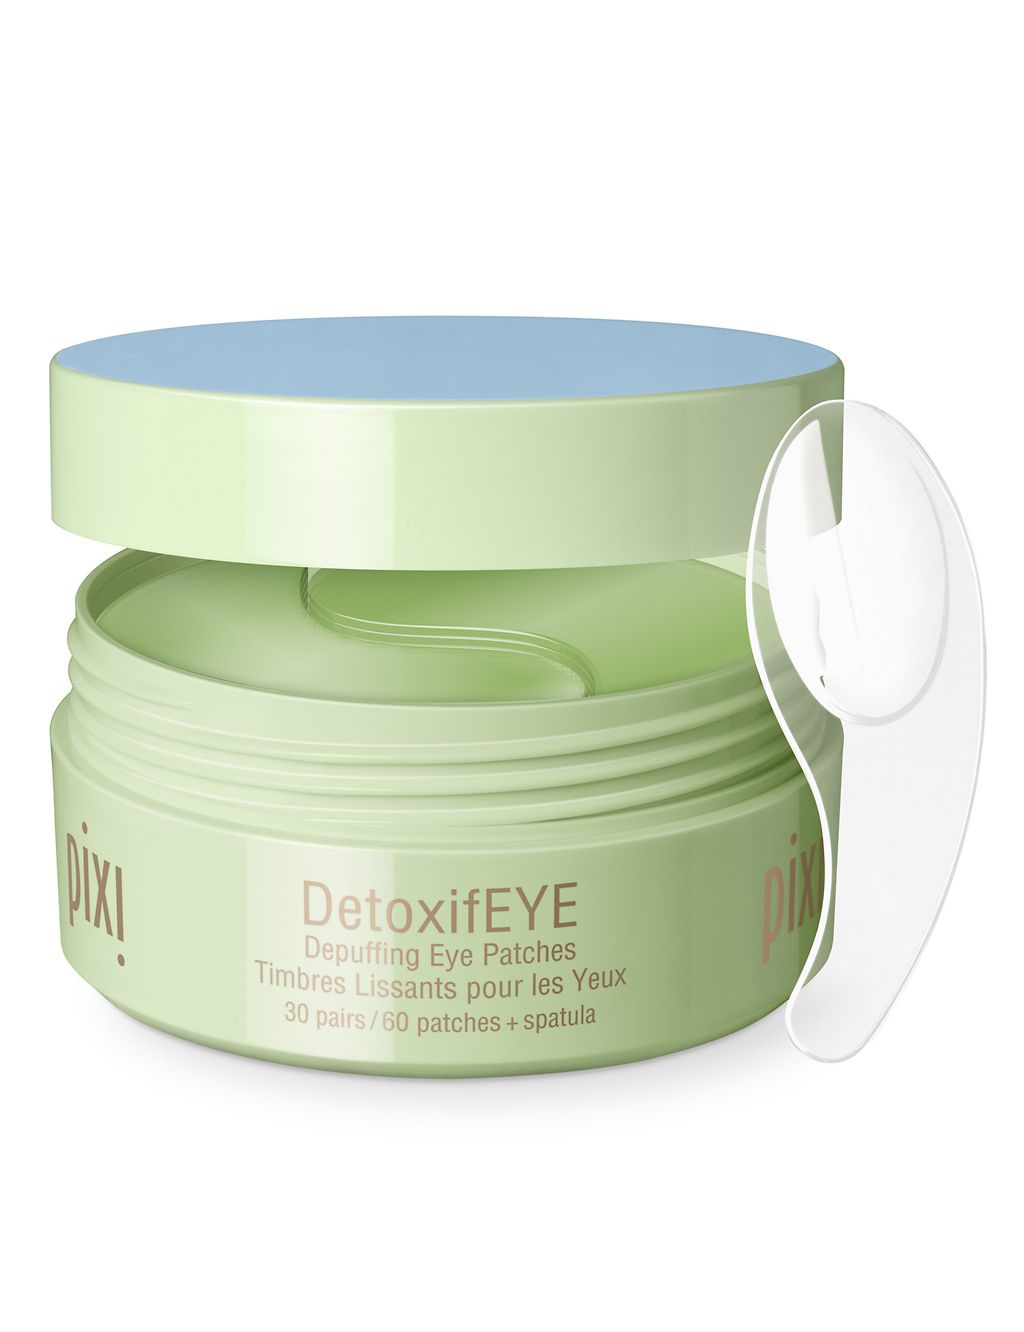 DetoxifEye Depuffing Eye Patches 2 of 4